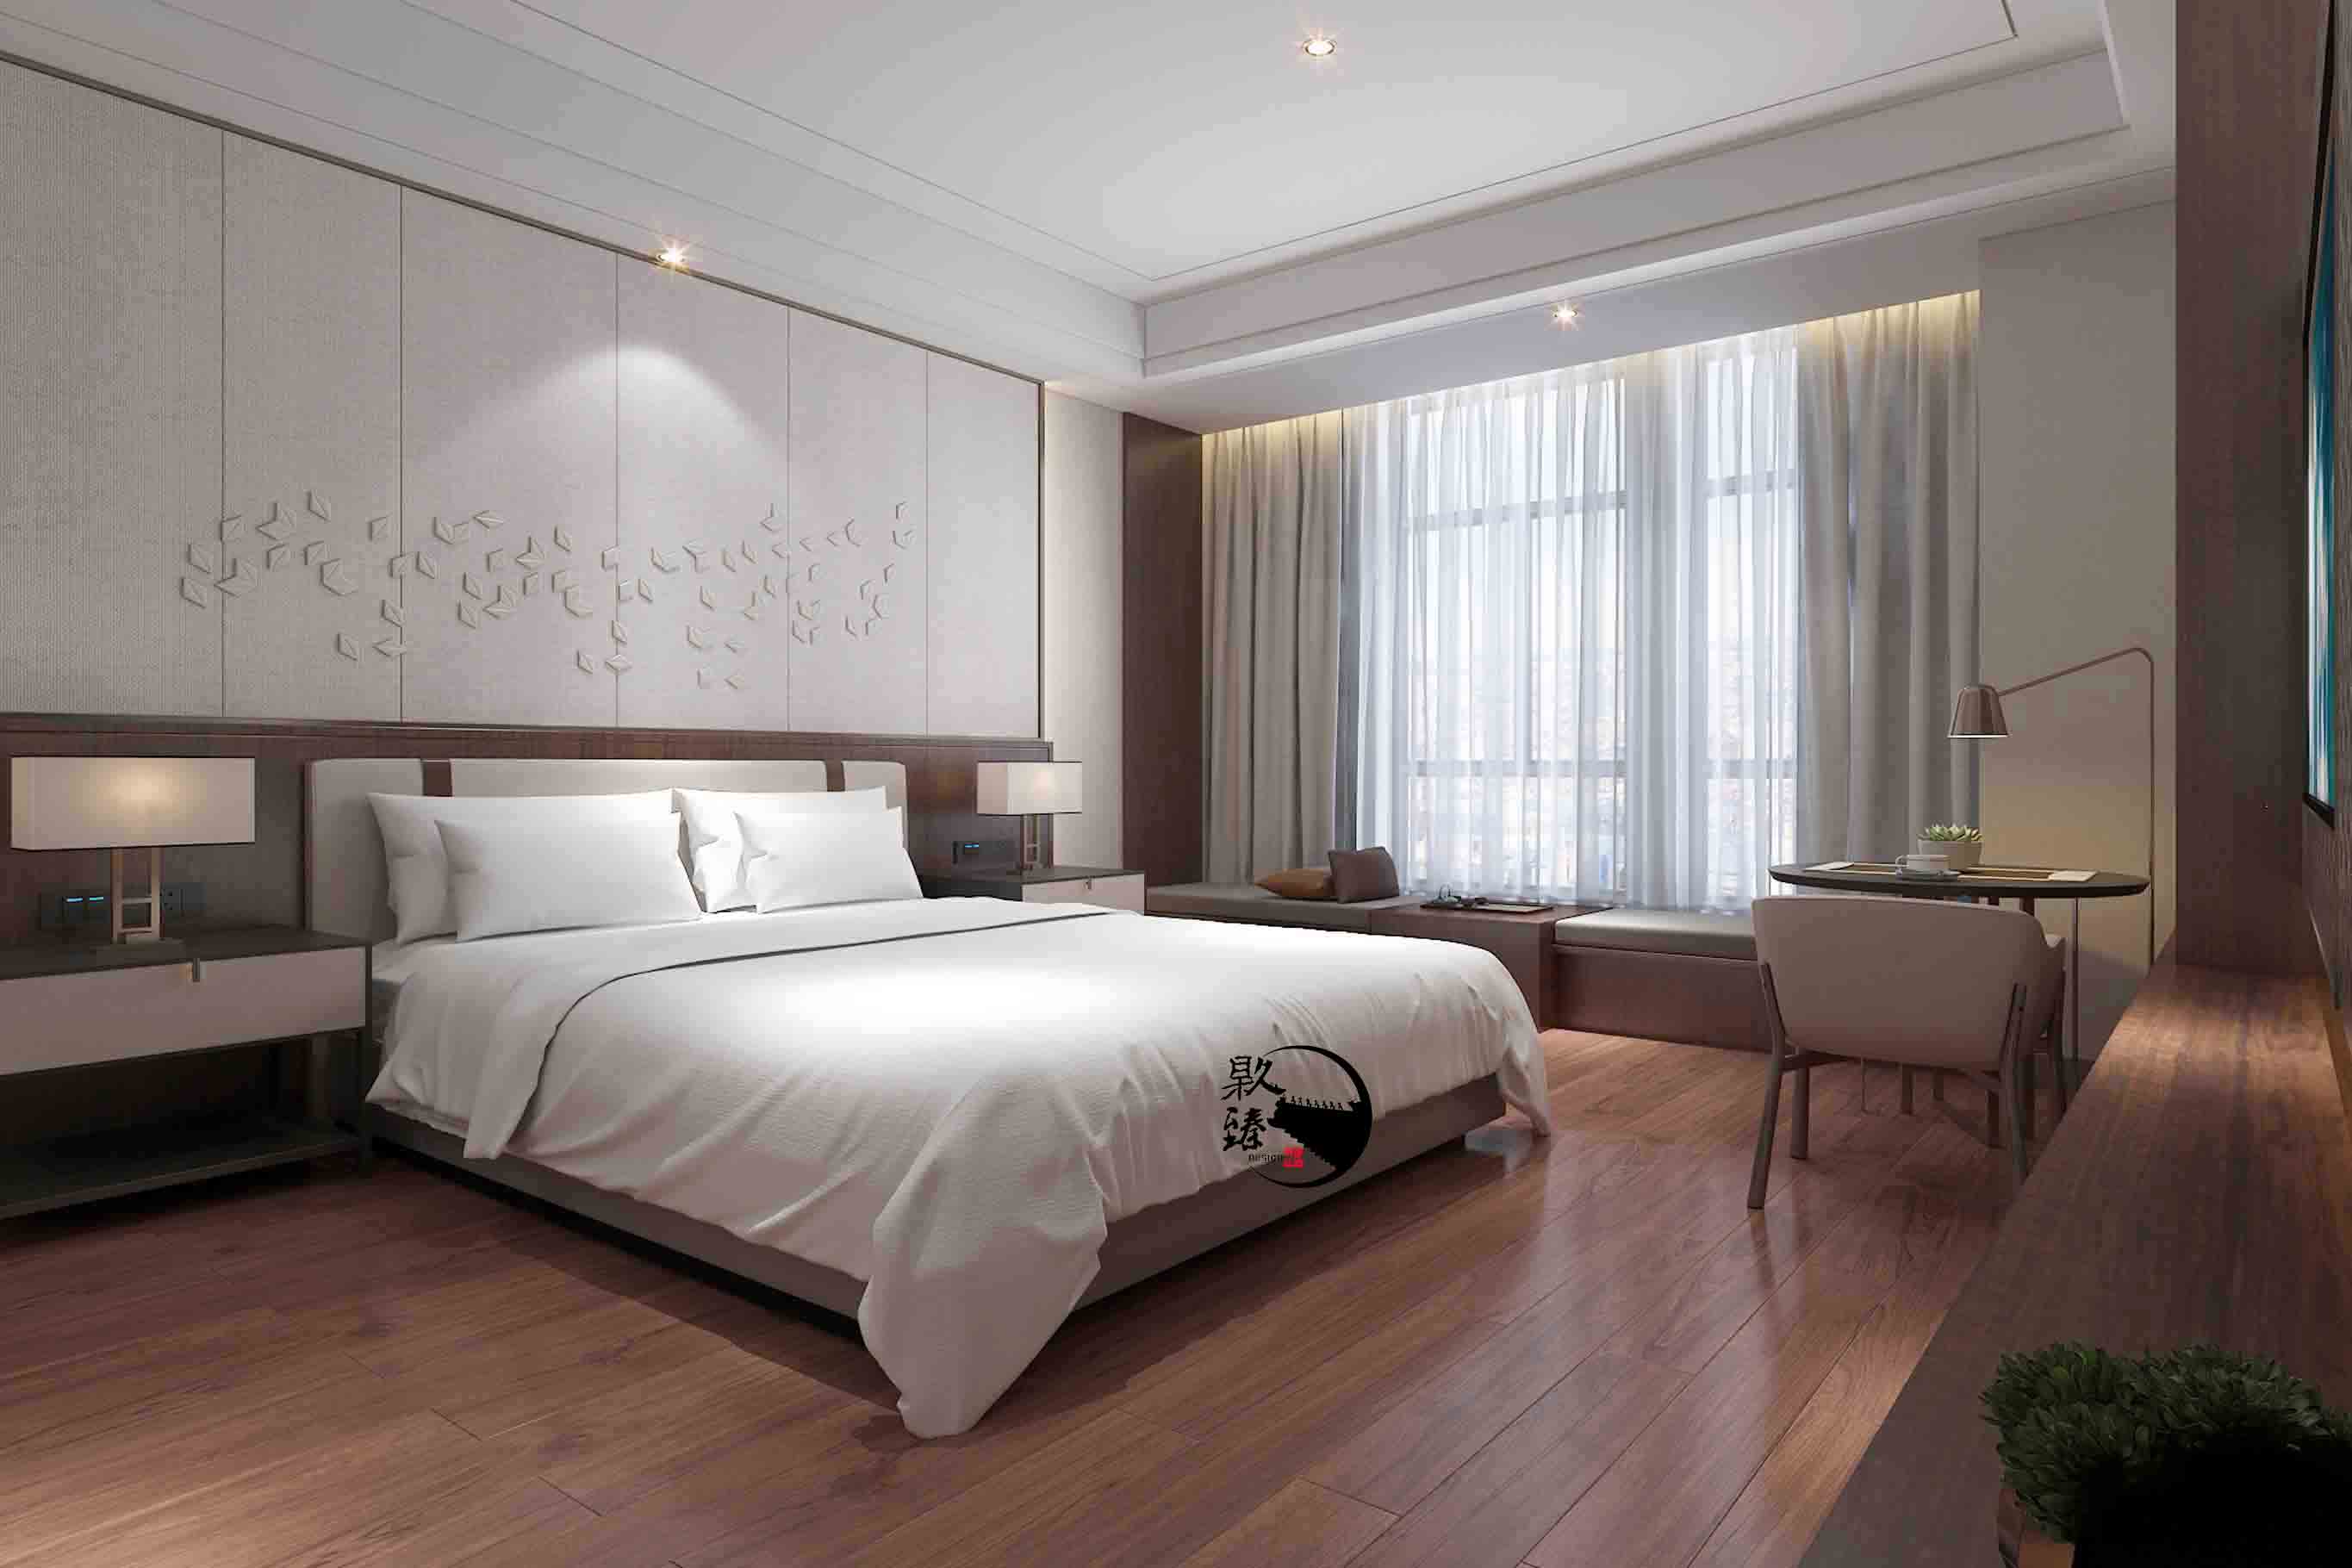 海原米素酒店设计|满足客户对舒适和安静的需求